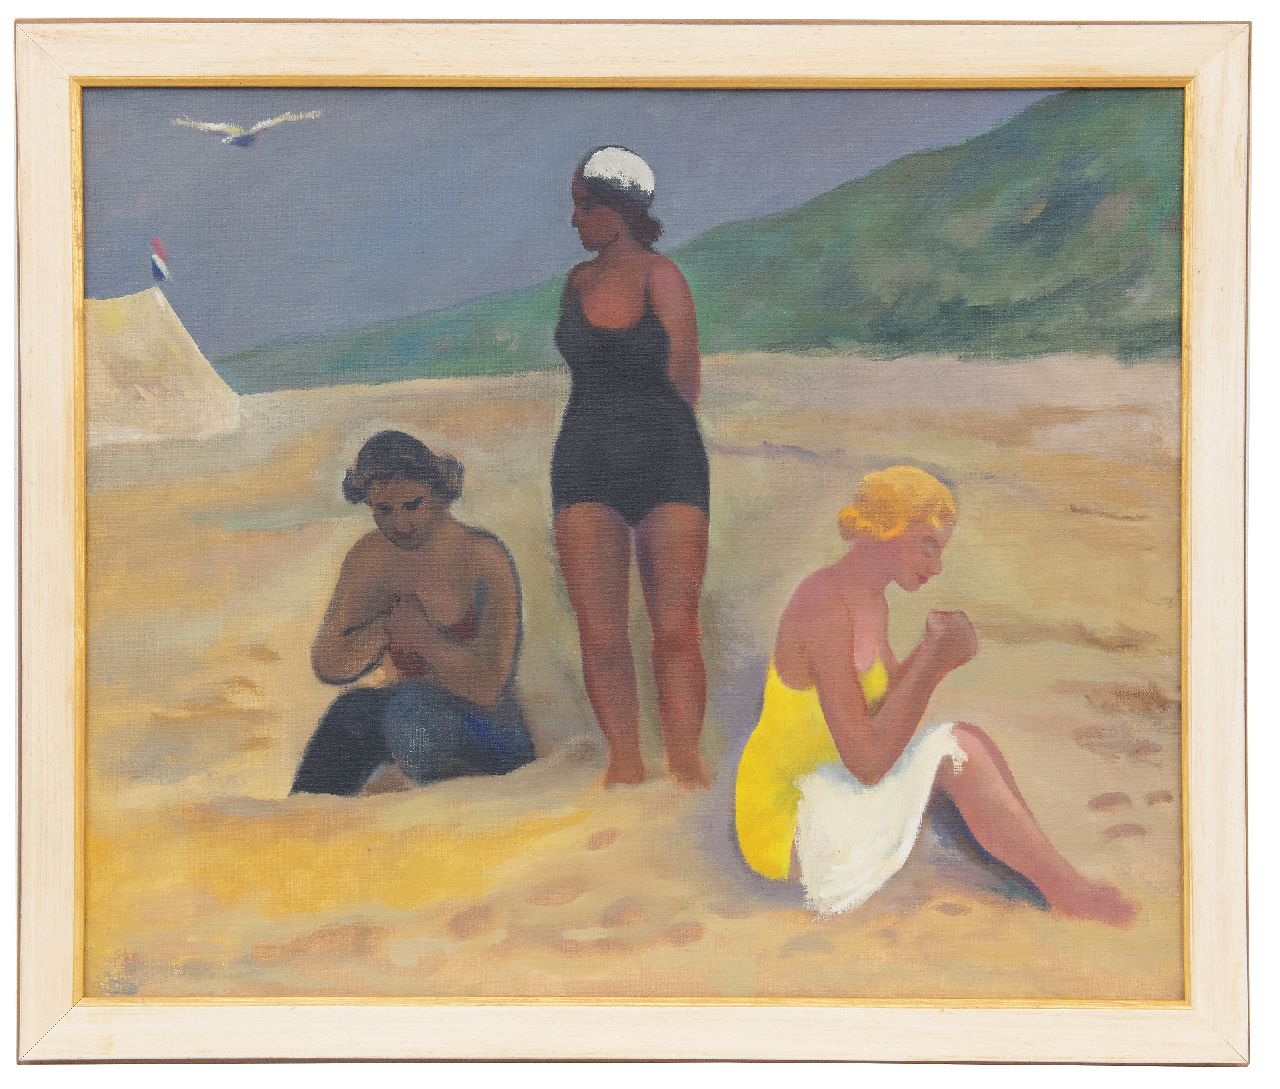 Kleima E.A.  | 'Ekke' Abel Kleima, 3 dames aan het strand, Schiermonnikoog, olieverf op doek 50,4 x 60,5 cm, gesigneerd met initialen op spieraam en gedateerd op spieraam 1939